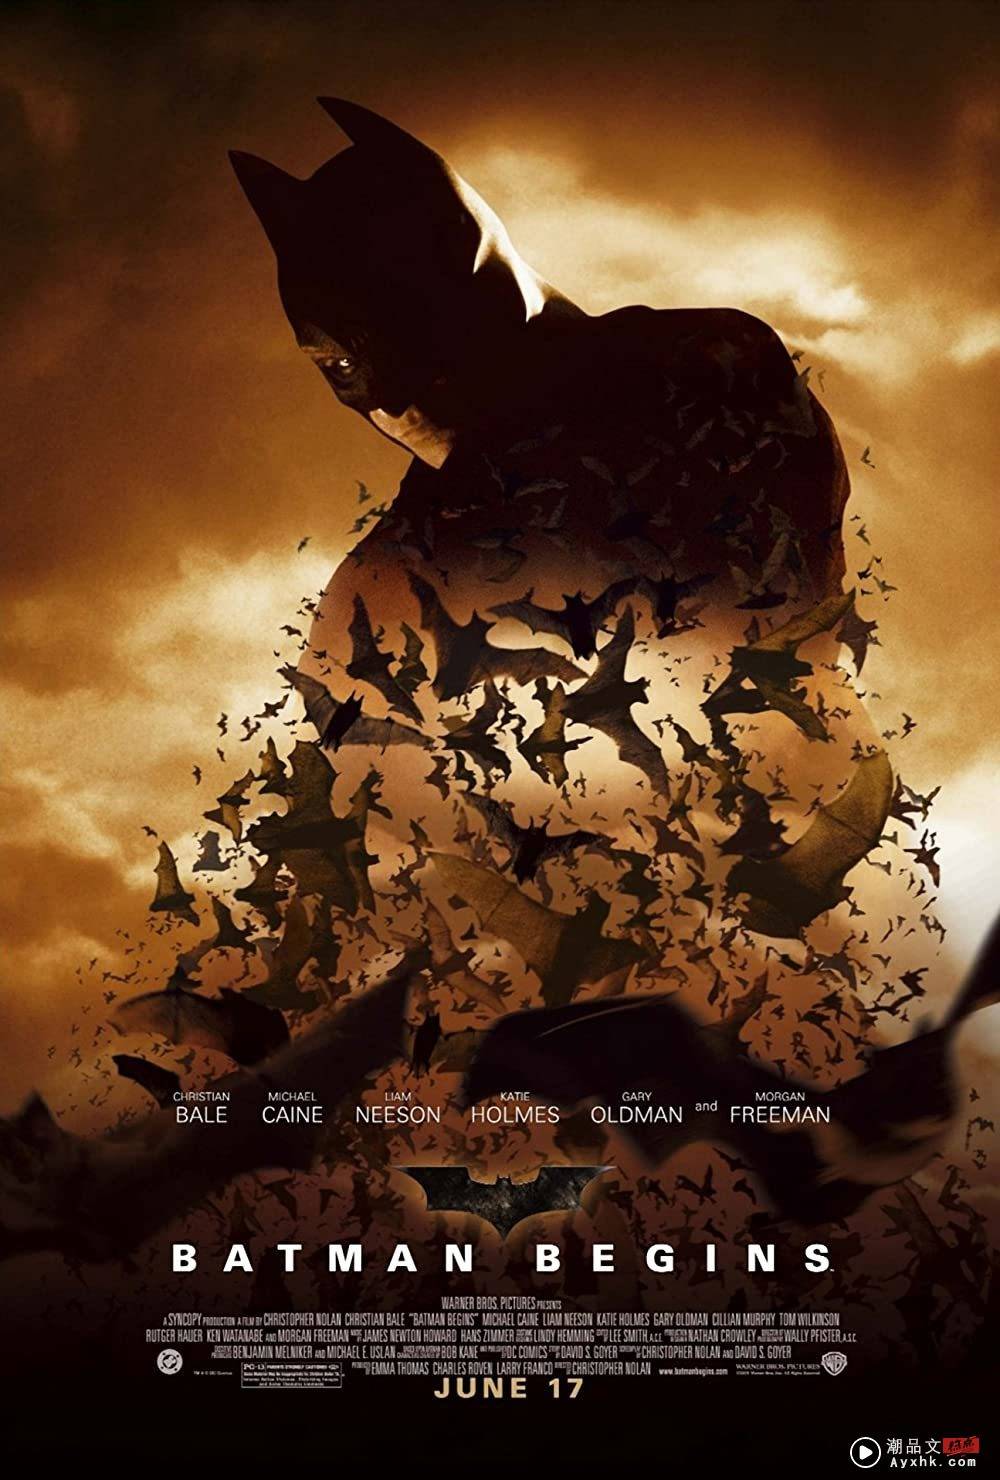 到电影院看《THE BATMAN》前必重温！盘点5部蝙蝠侠系列作品 你最爱哪一部？ 娱乐资讯 图6张